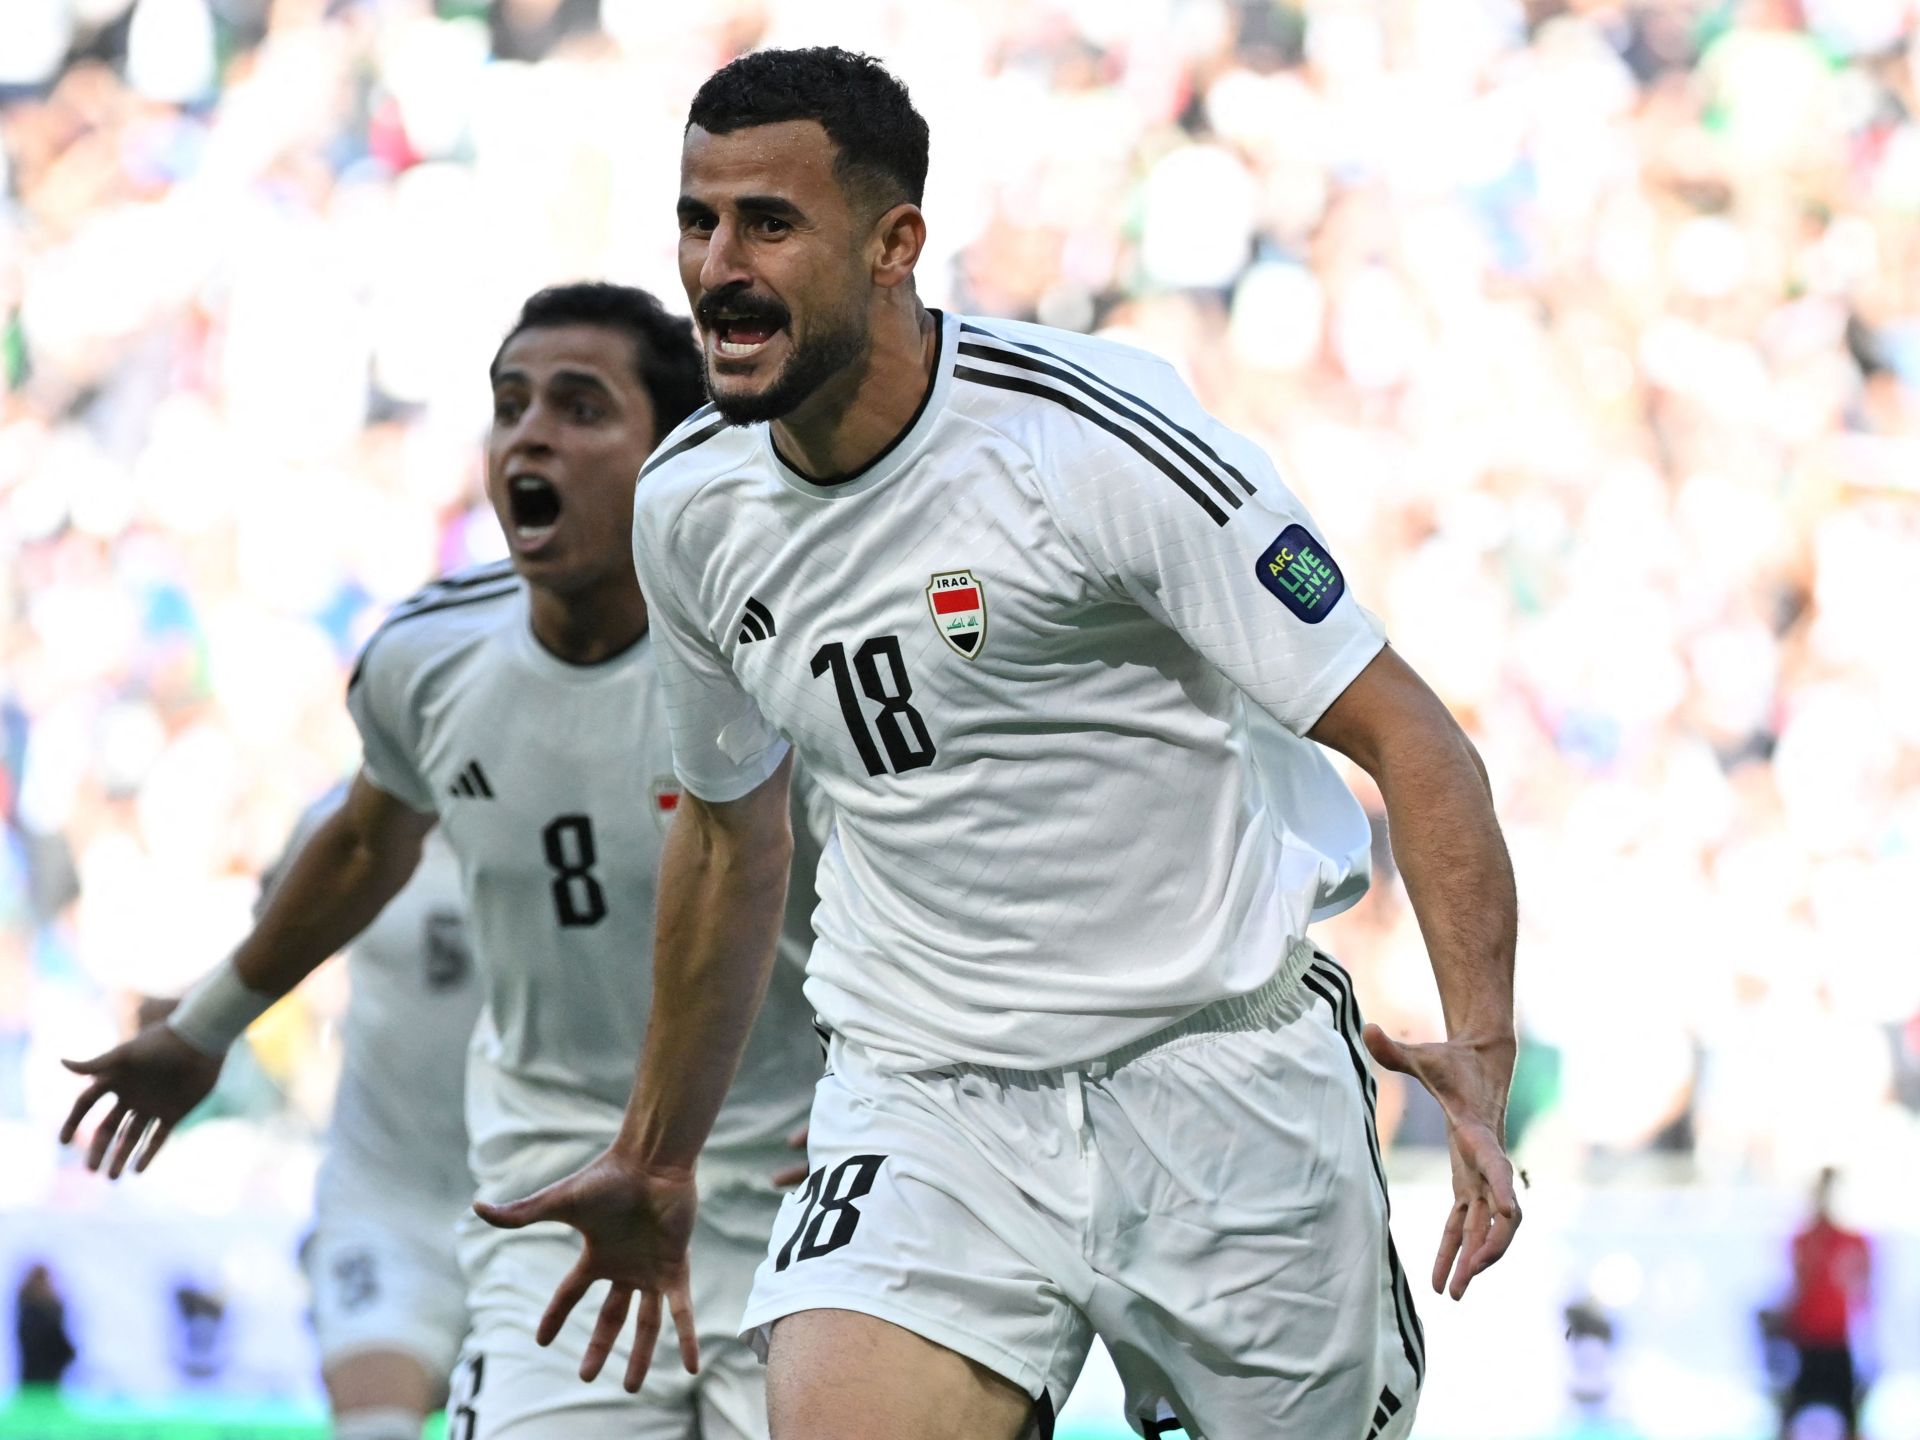 المنتخبات العربية تستعرض تطورها أمام كبار المرشحين في كأس آسيا | رياضة – البوكس نيوز